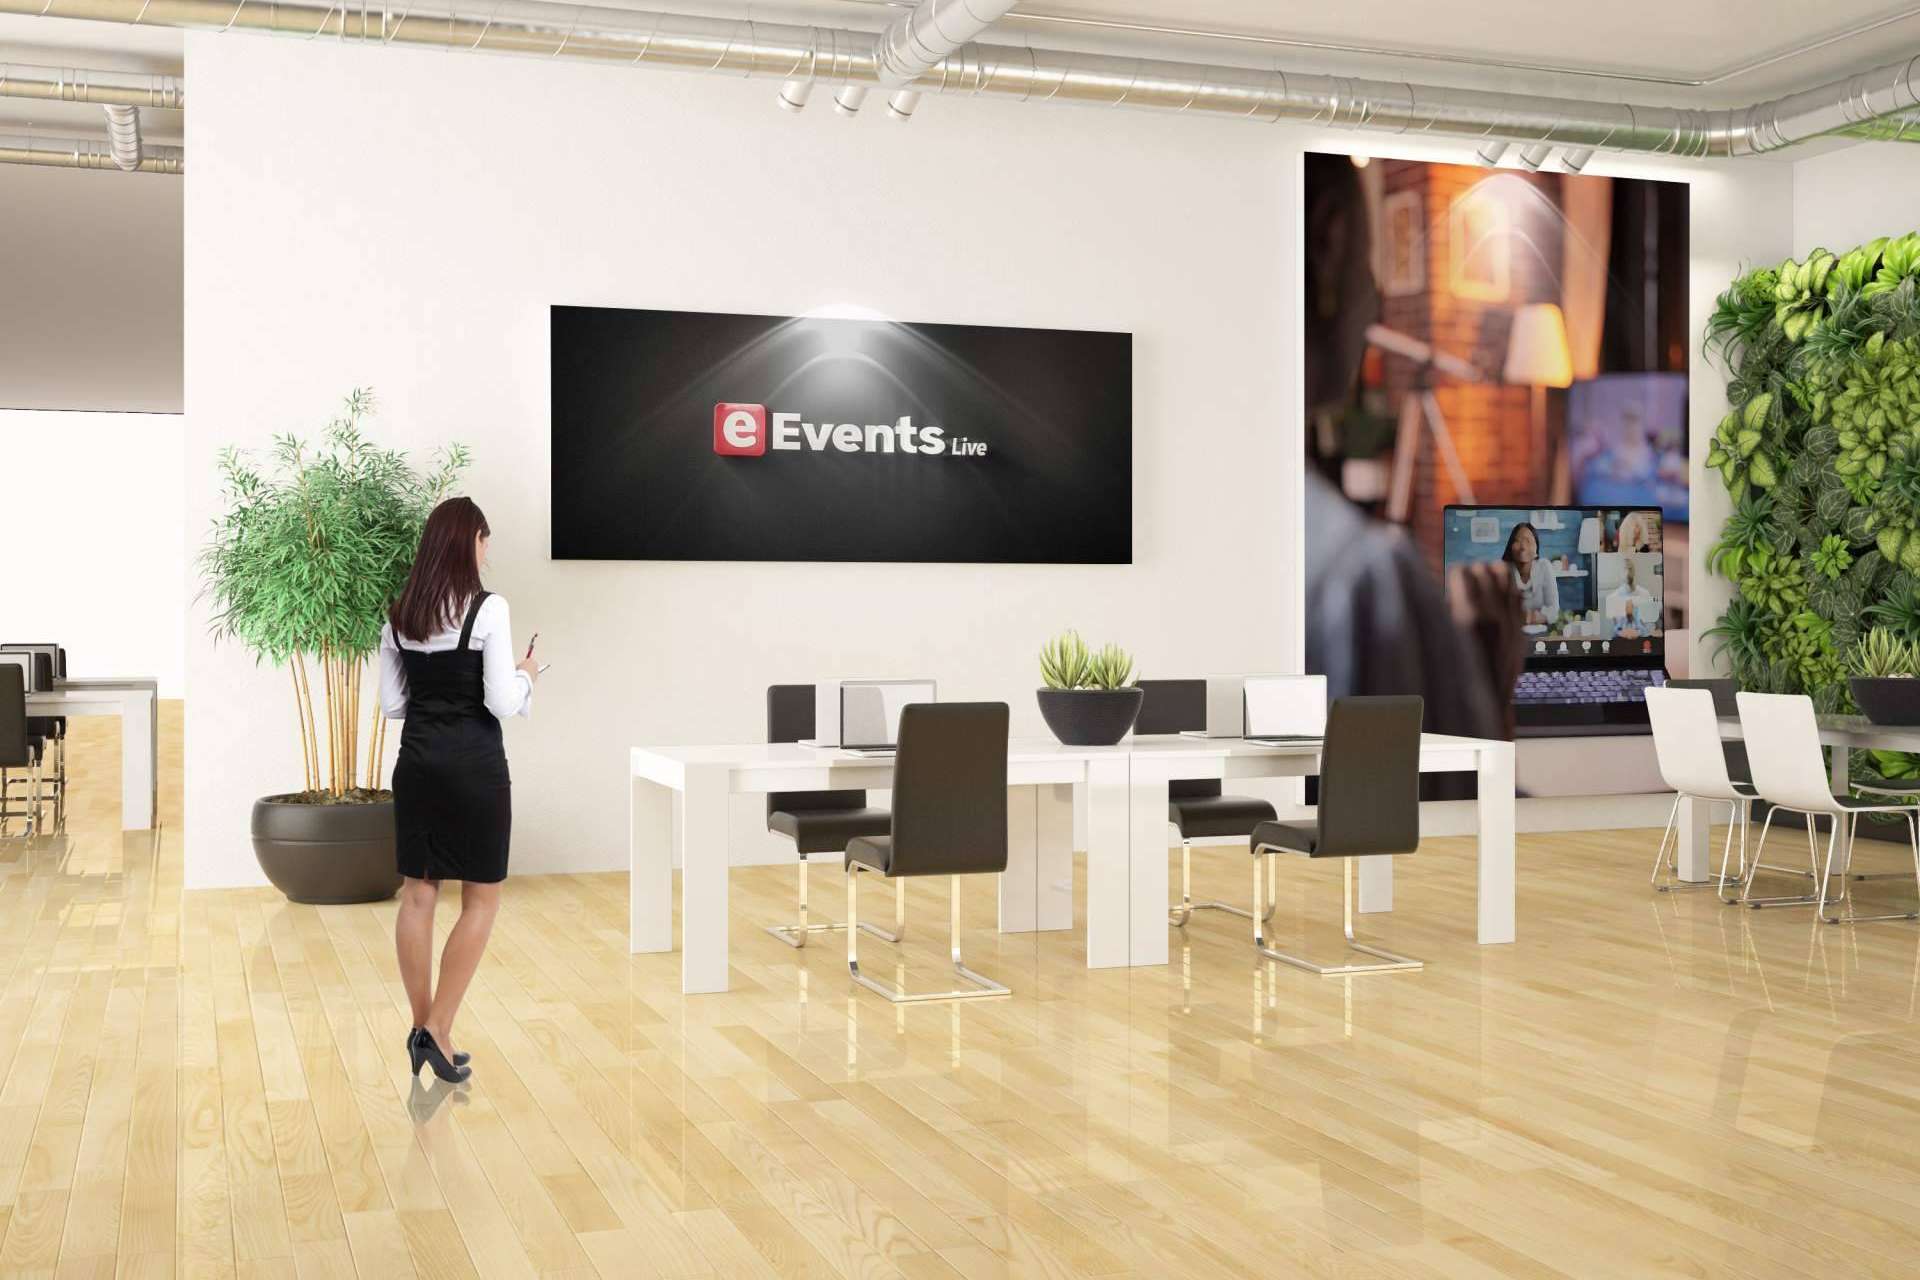 La organización de eventos digitales, eEvents Live